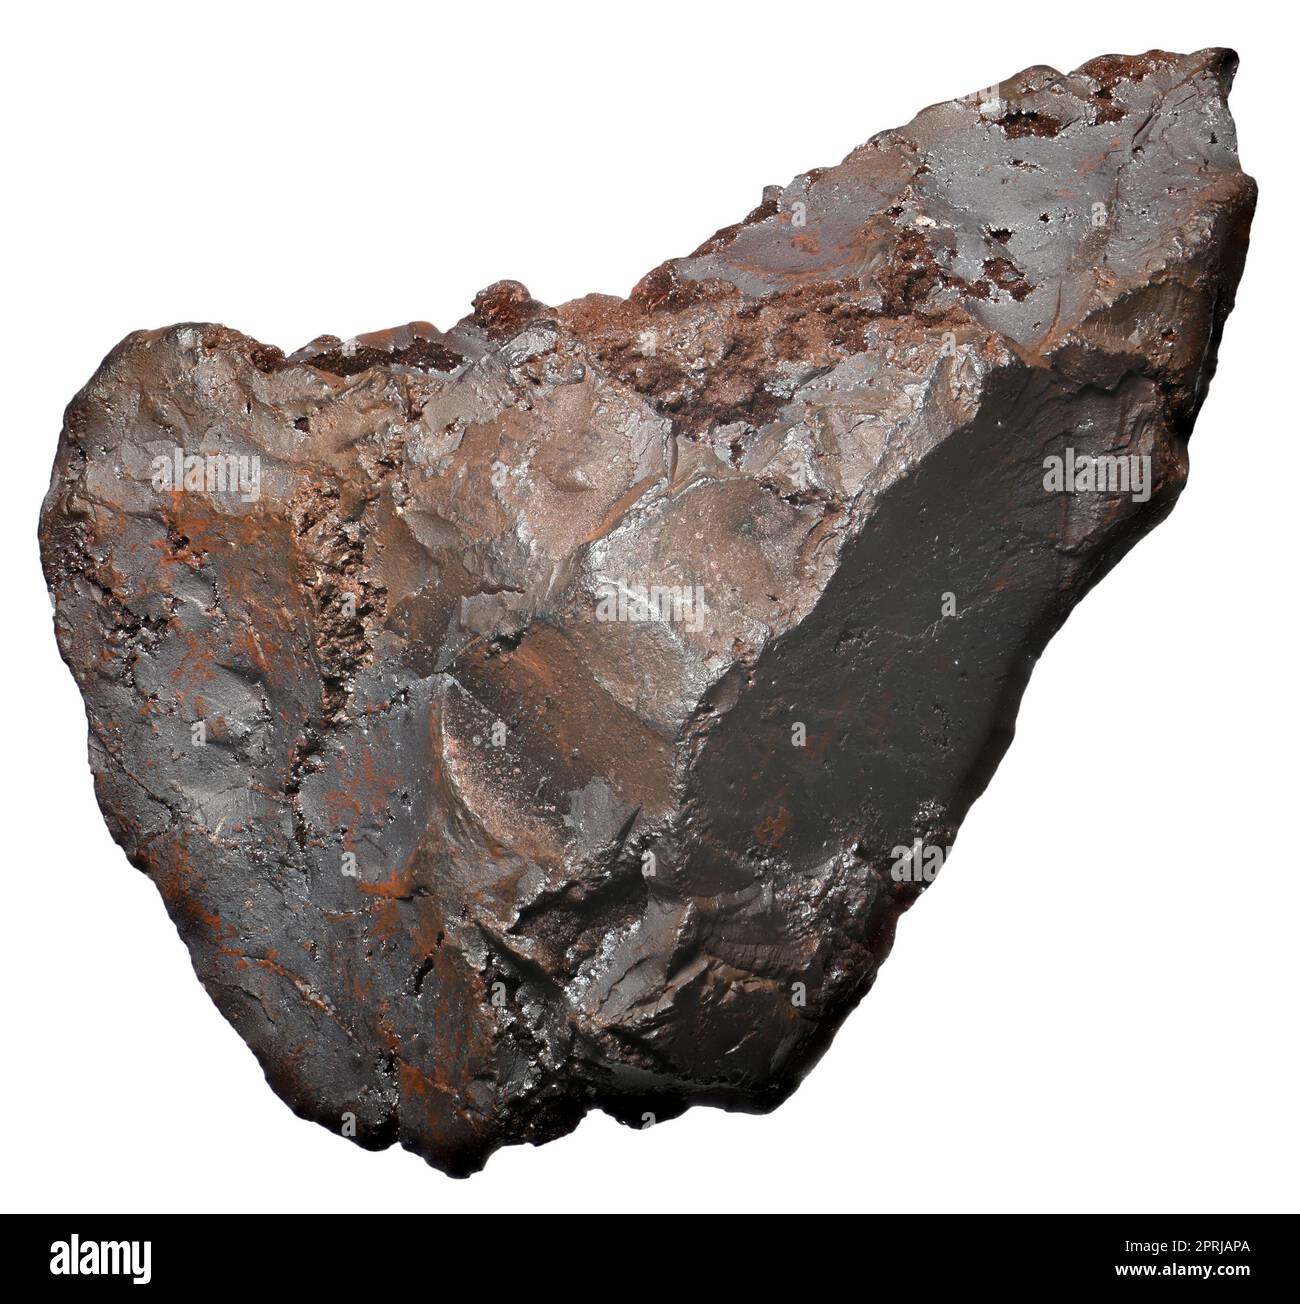 Hematite / Haematite (principal ore of iron) Stock Photo